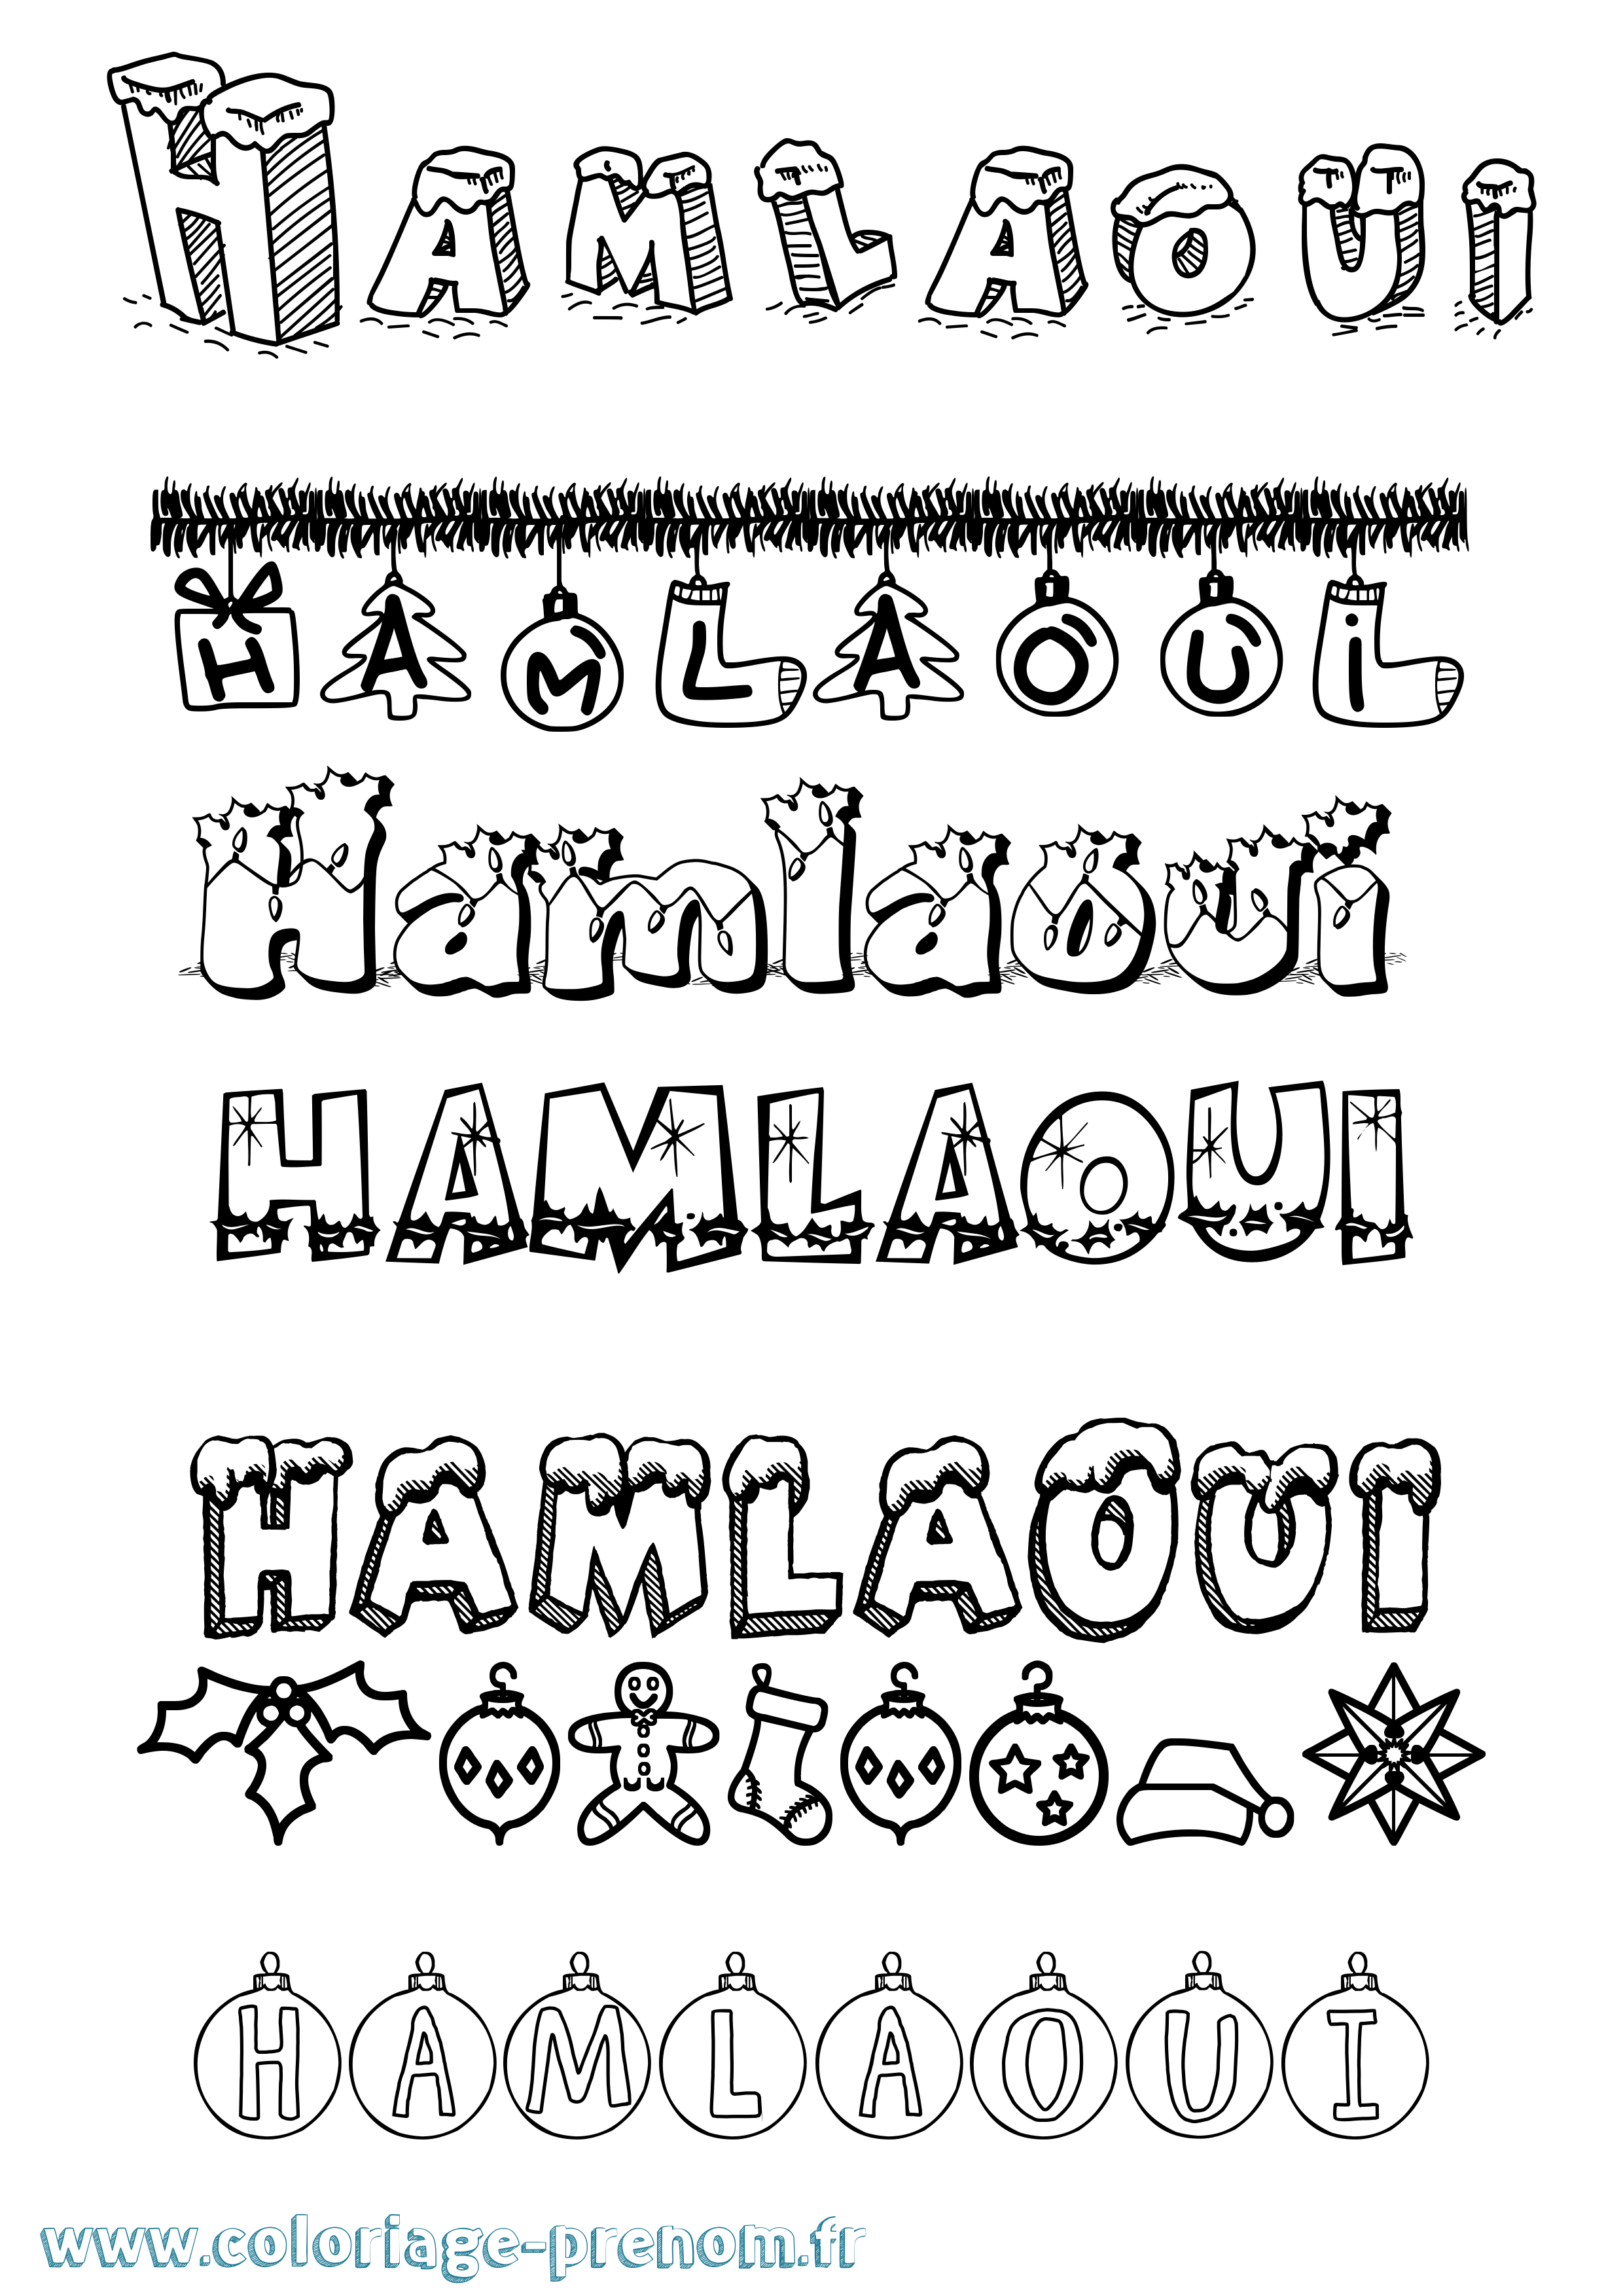 Coloriage prénom Hamlaoui Noël